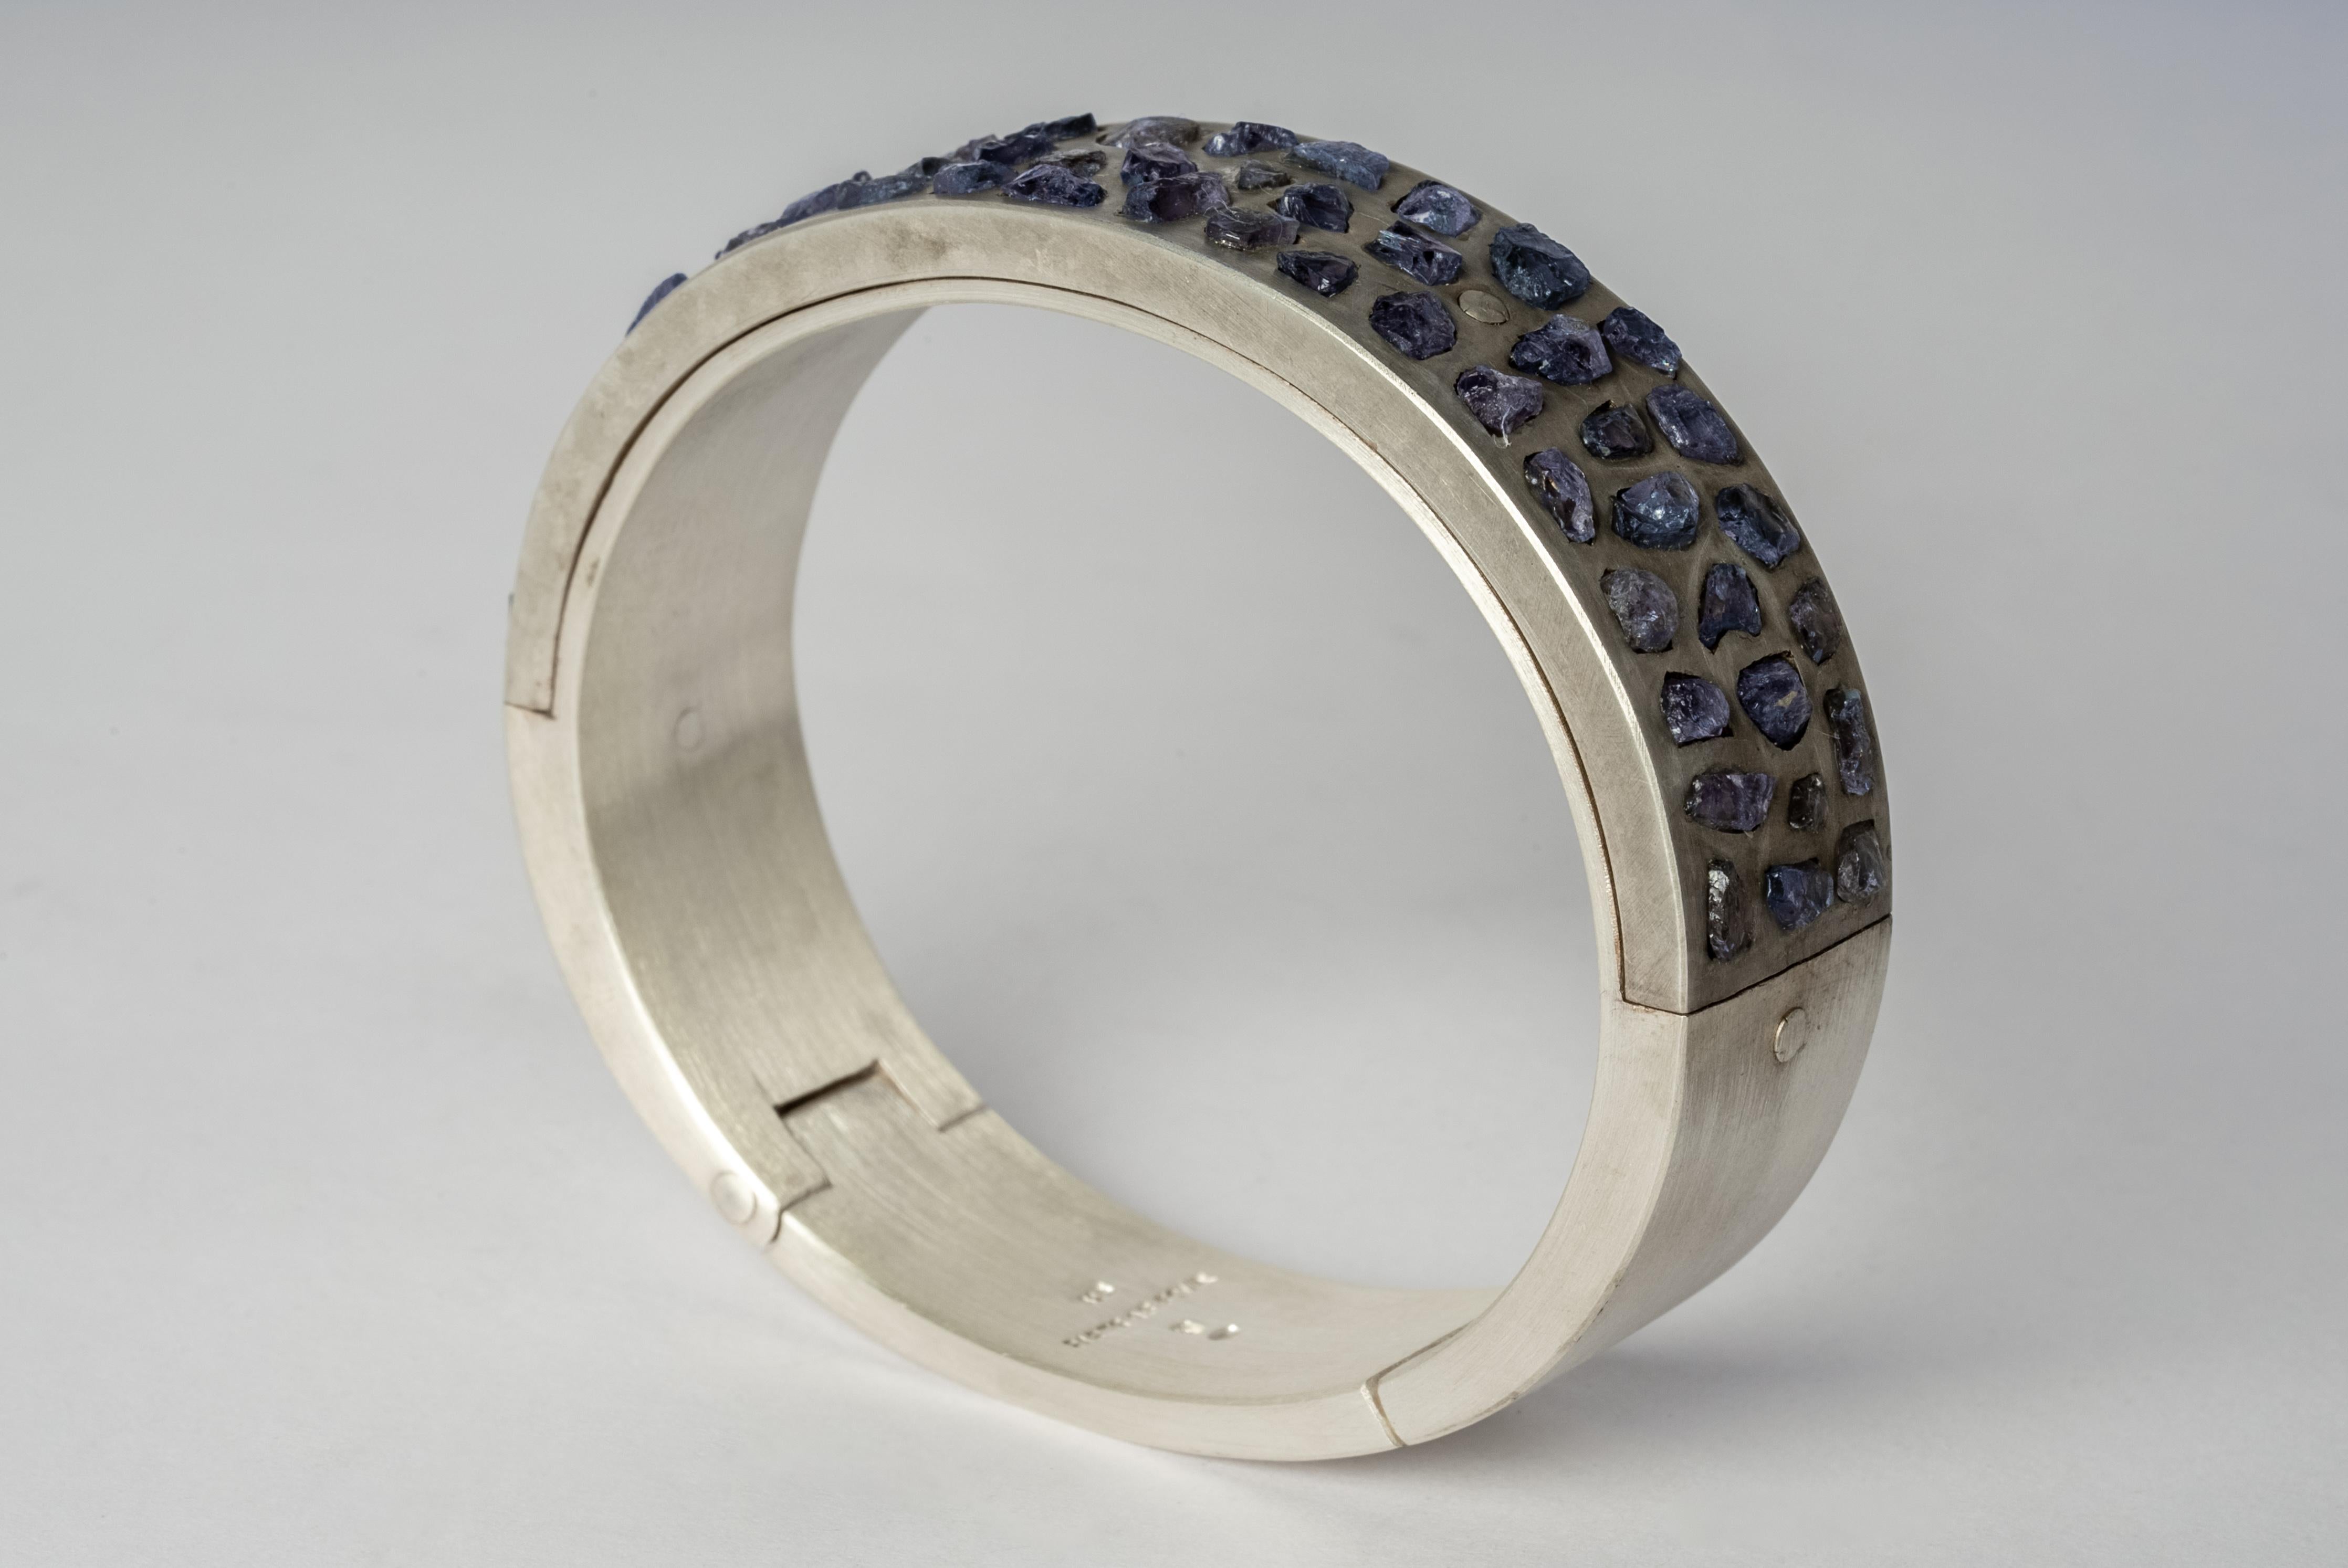 Armband aus Sterlingsilber und Platten aus rohen Tansanitfragmenten in Mega-Pave-Fassung. Dieser Artikel wird mit einem natürlich vorkommenden Element hergestellt und kann von der Abbildung abweichen. Jedes Stück ist einzigartig, und das macht es zu